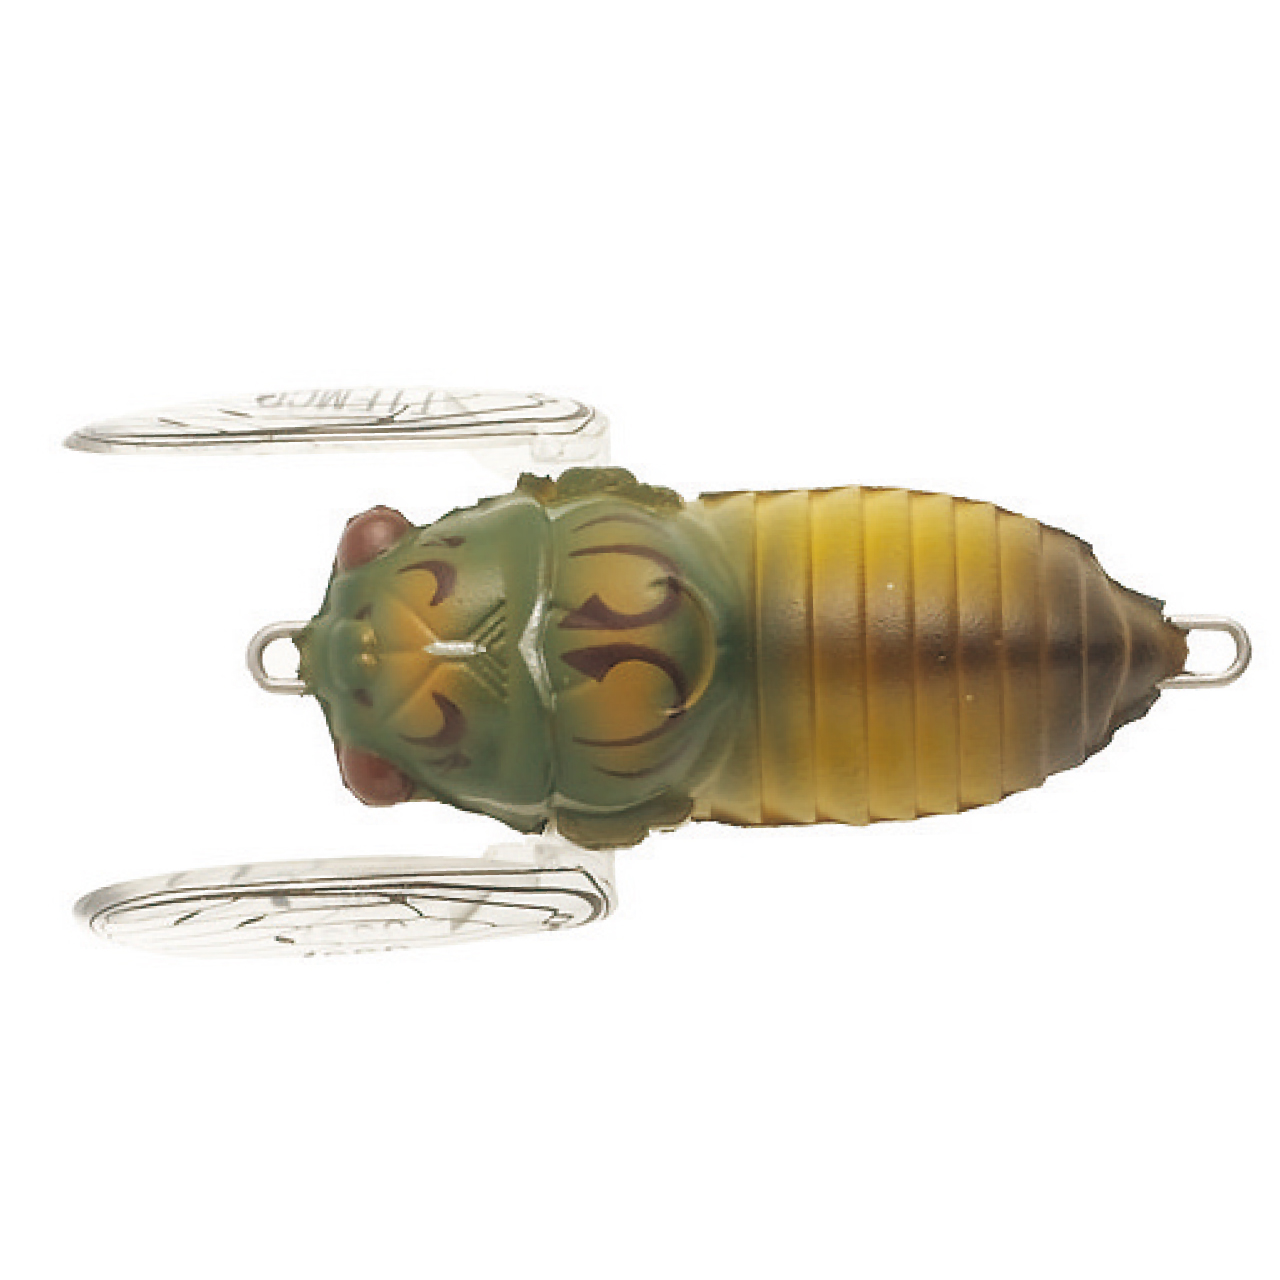 TIEMCO LURES Cicada Jumbo (Floating)